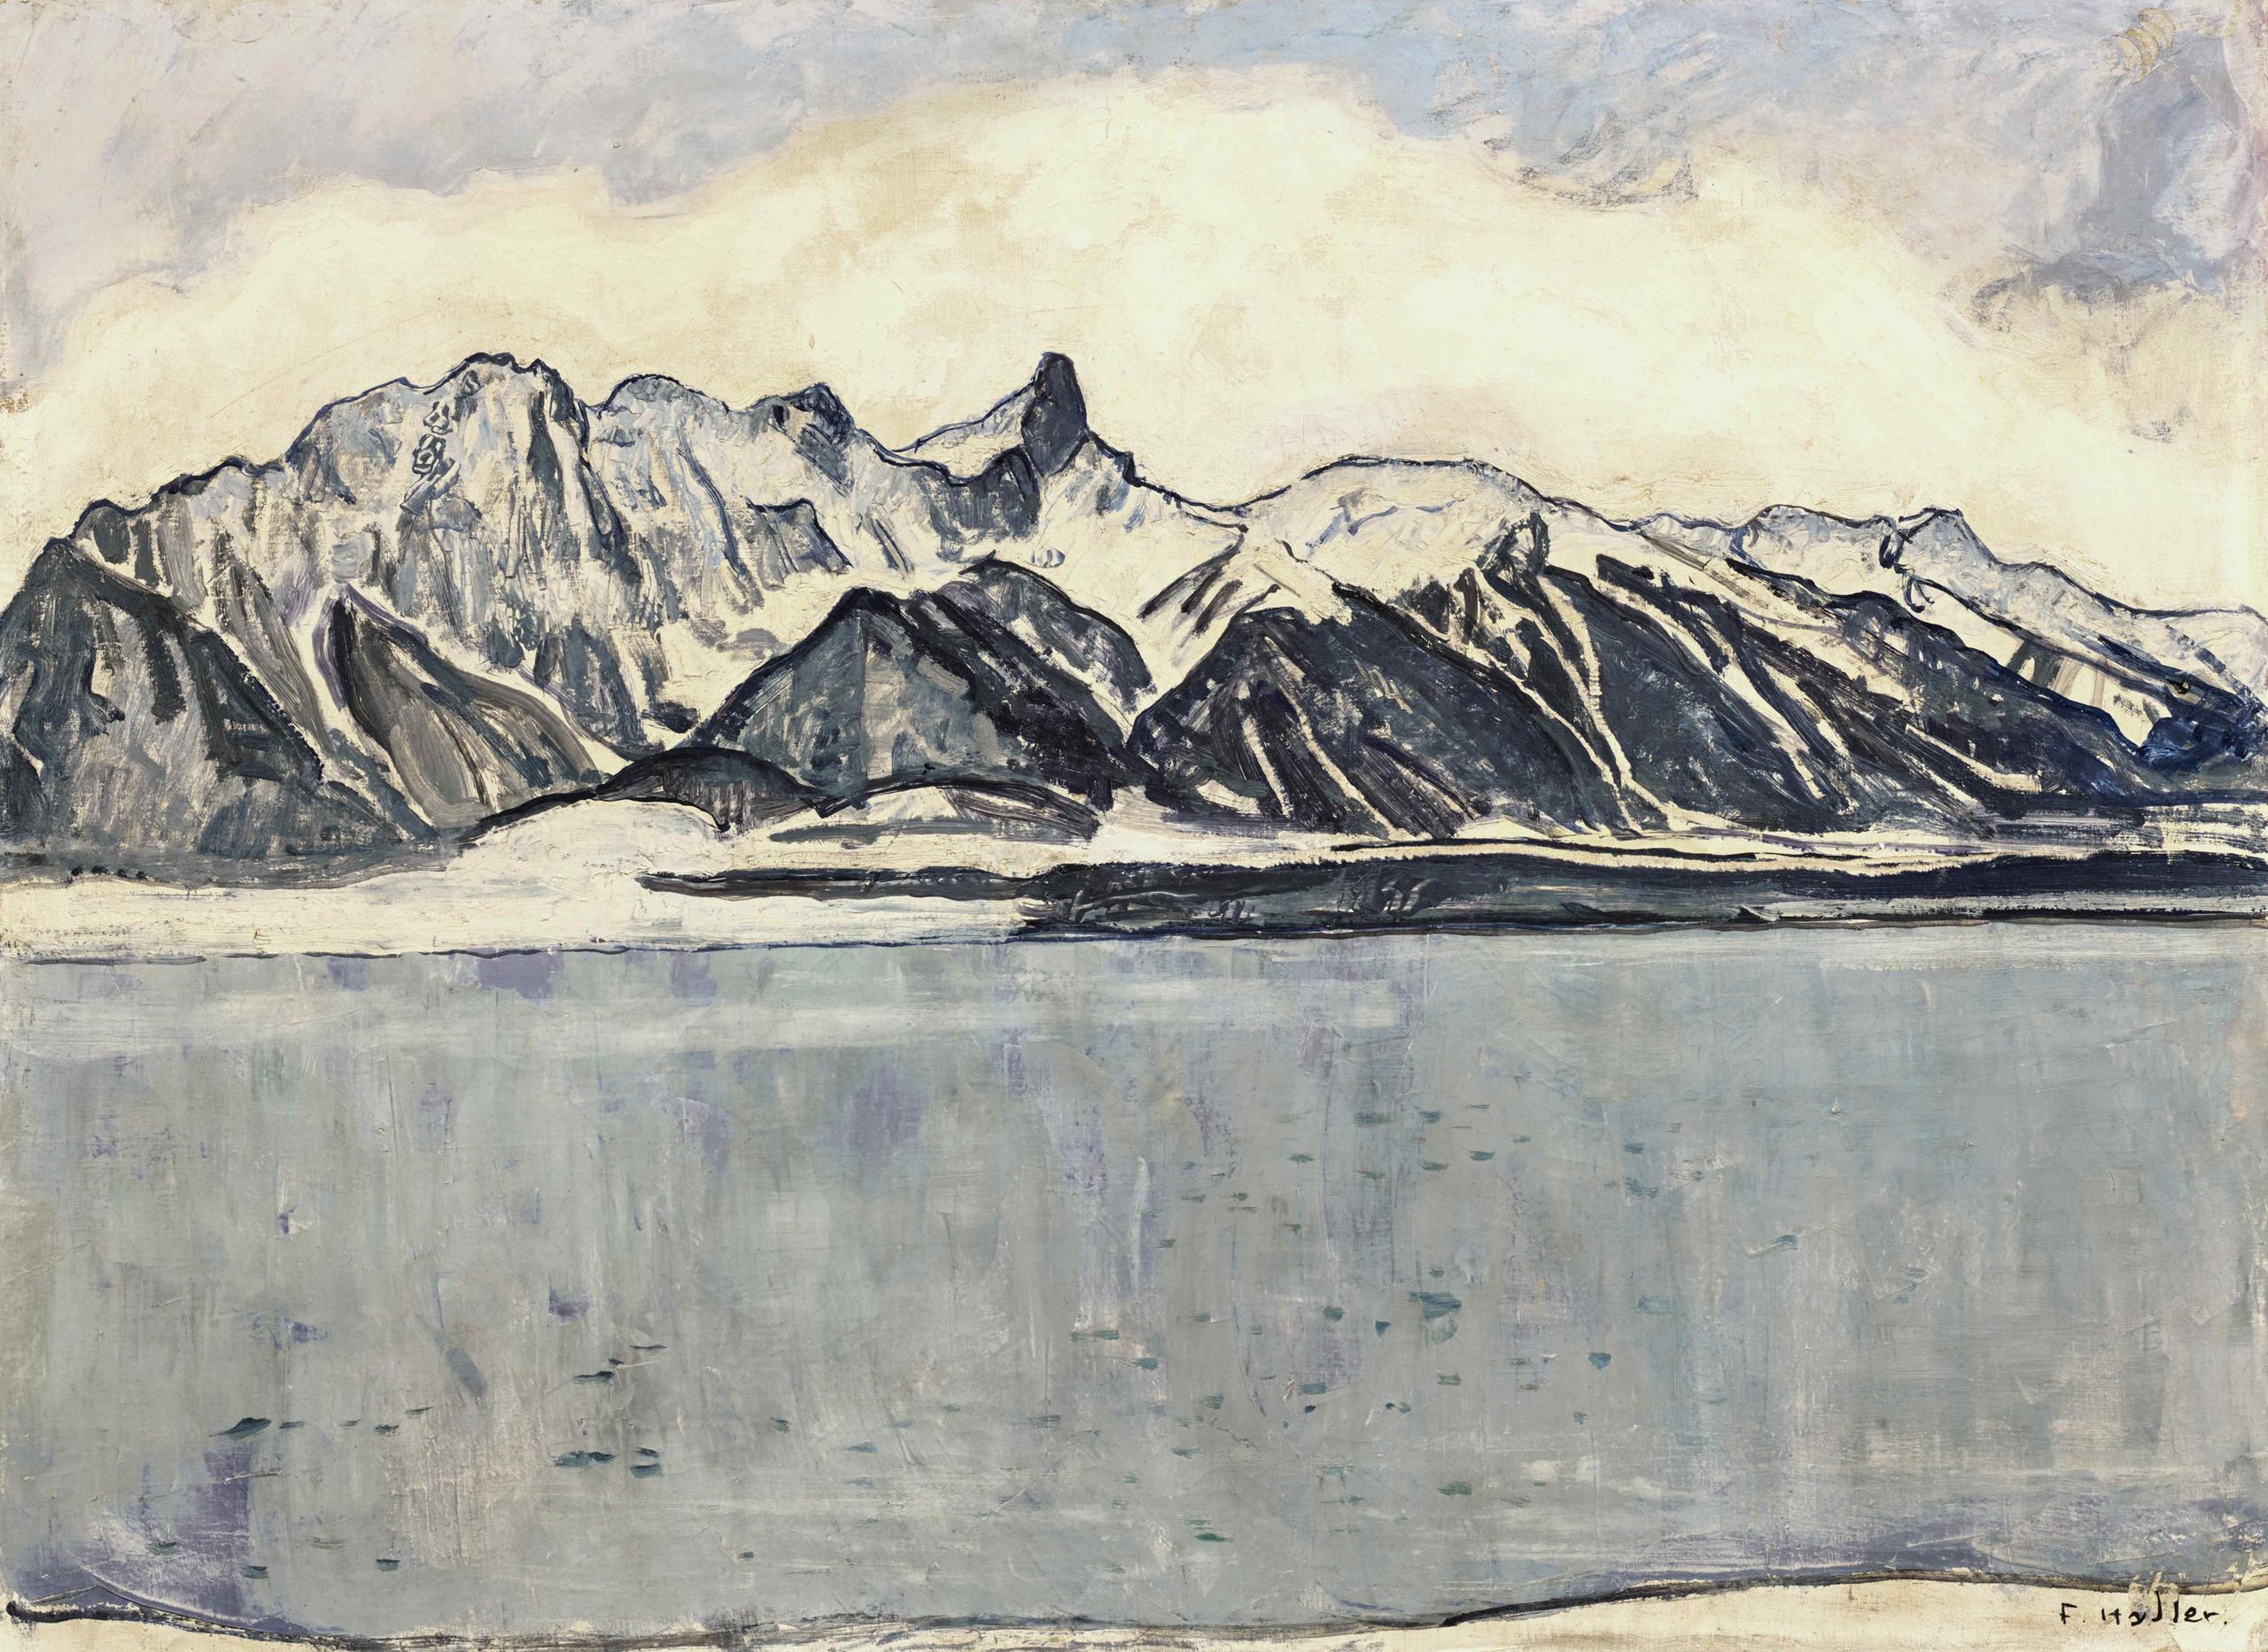 Quadro de Hodler com um lago e montanhas